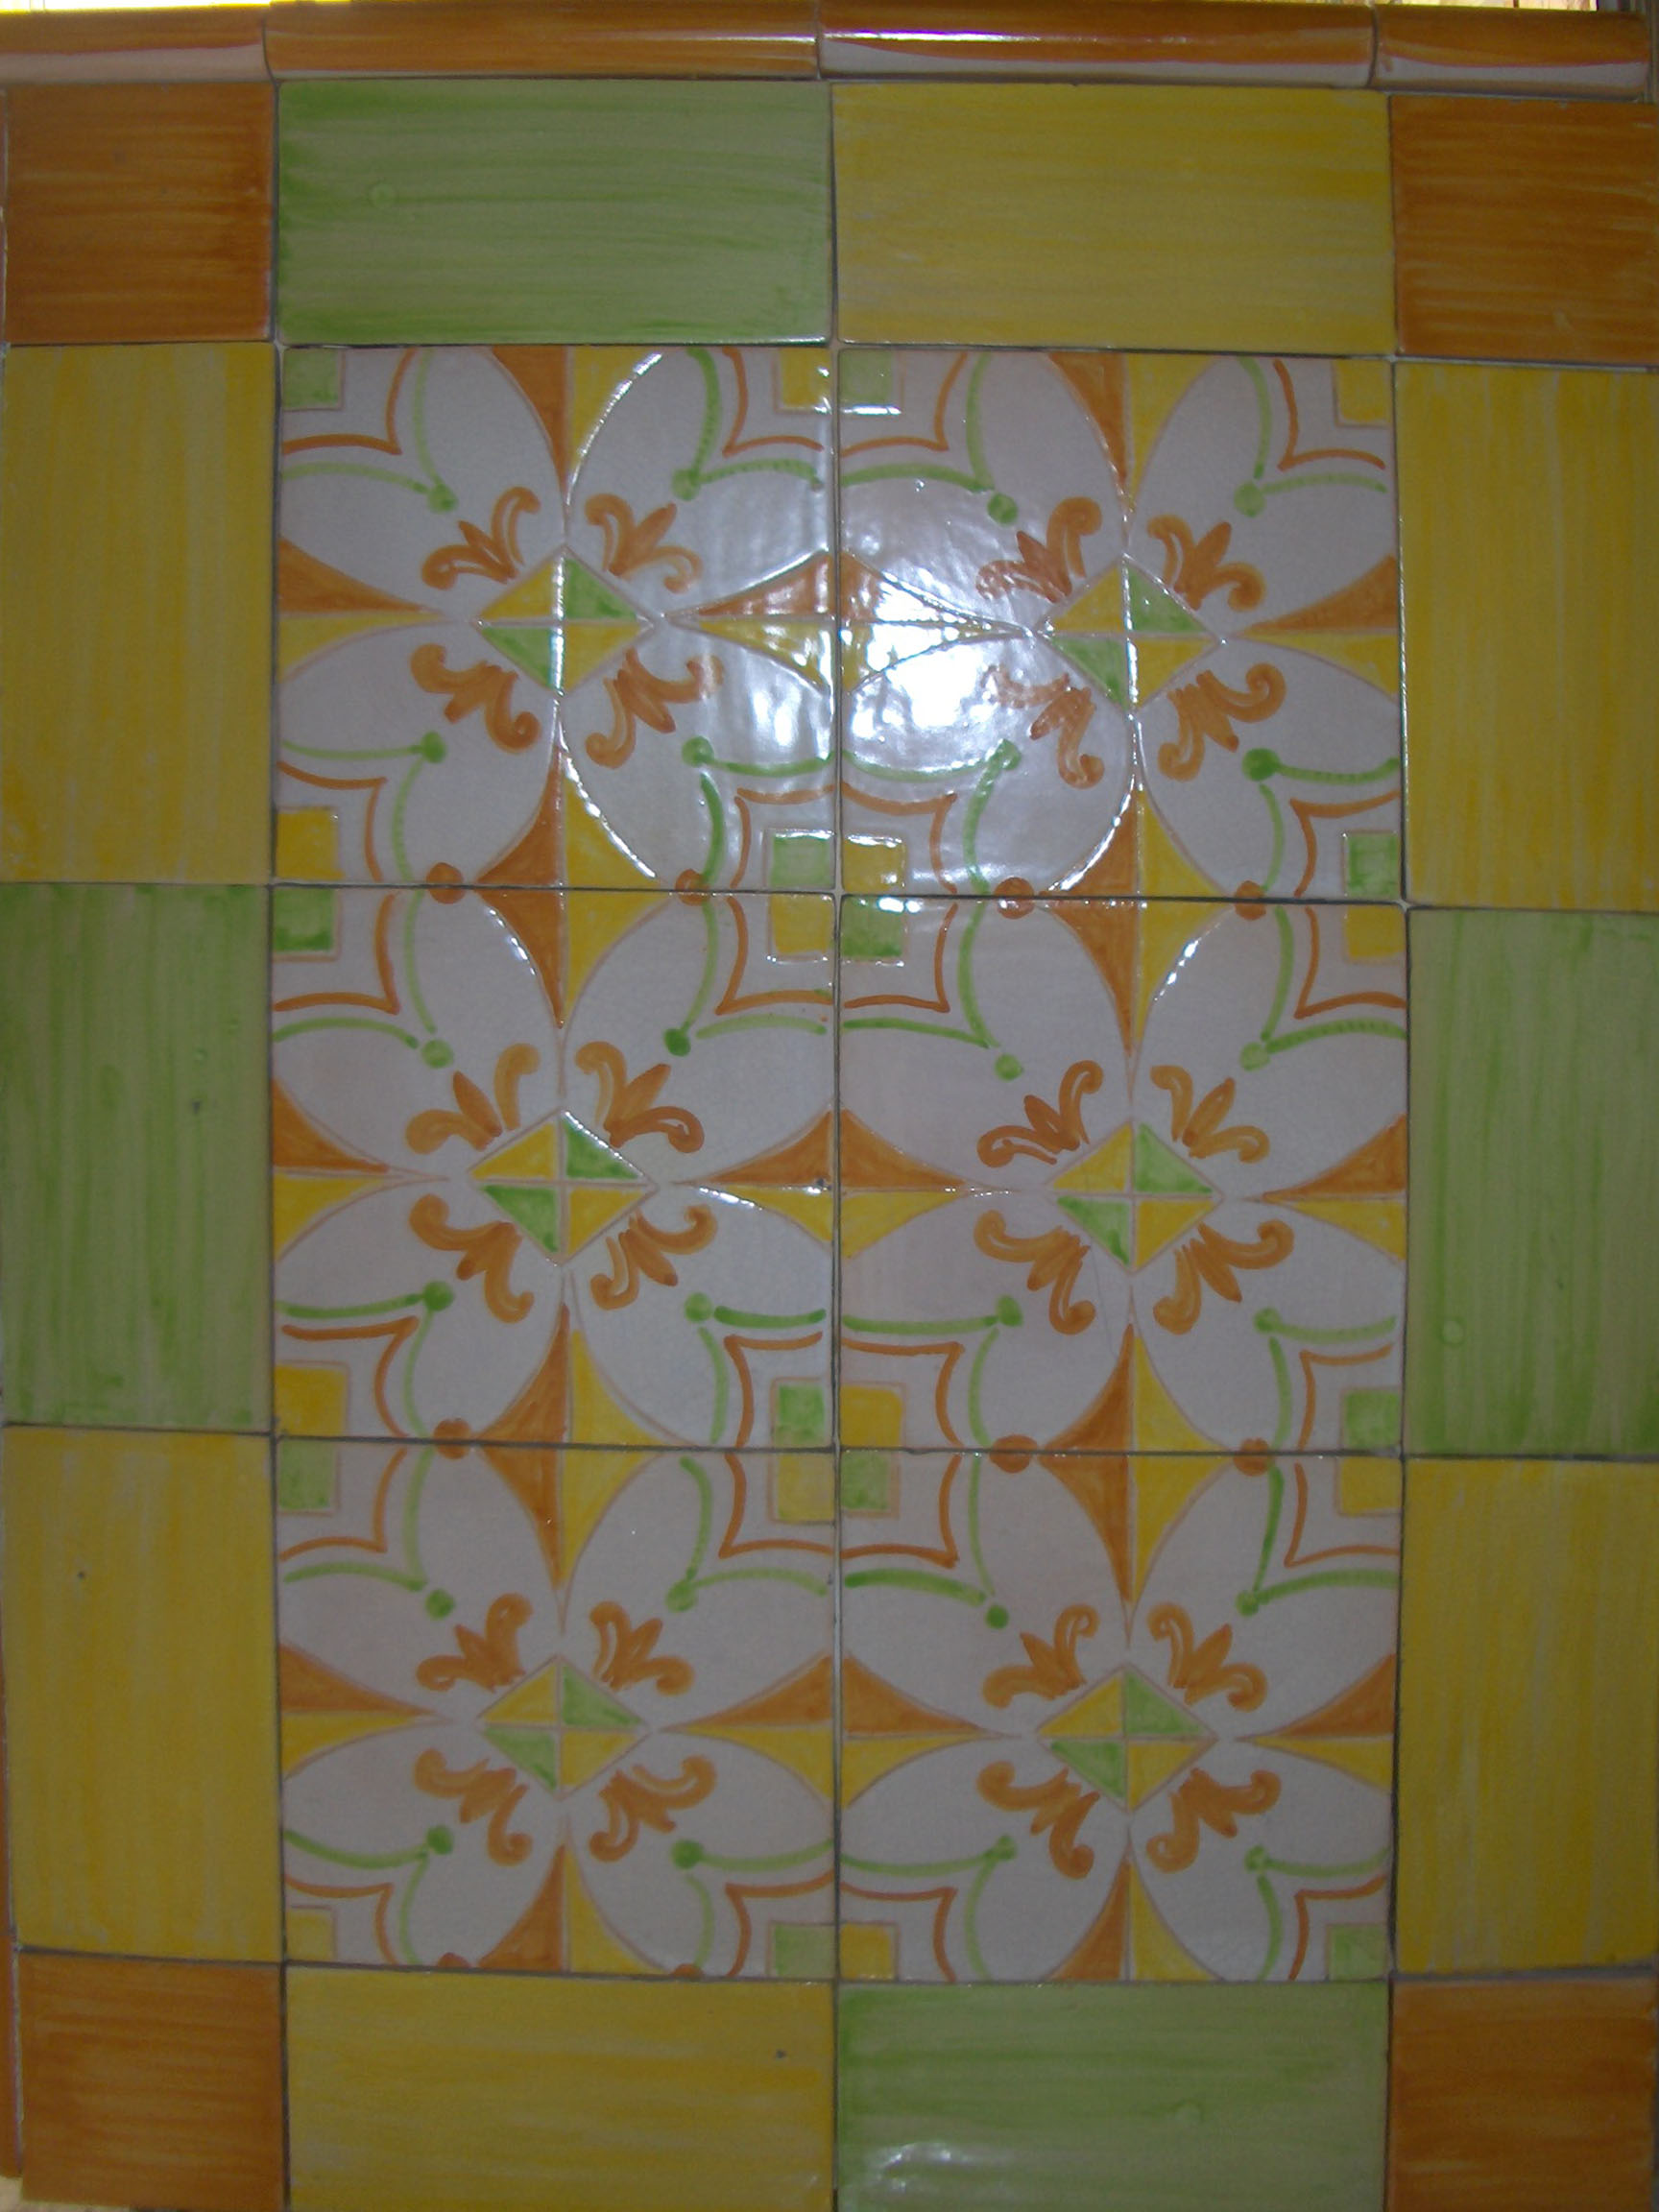 Pannello decorativo: decoro floreale Colori giallo, arancio e verde